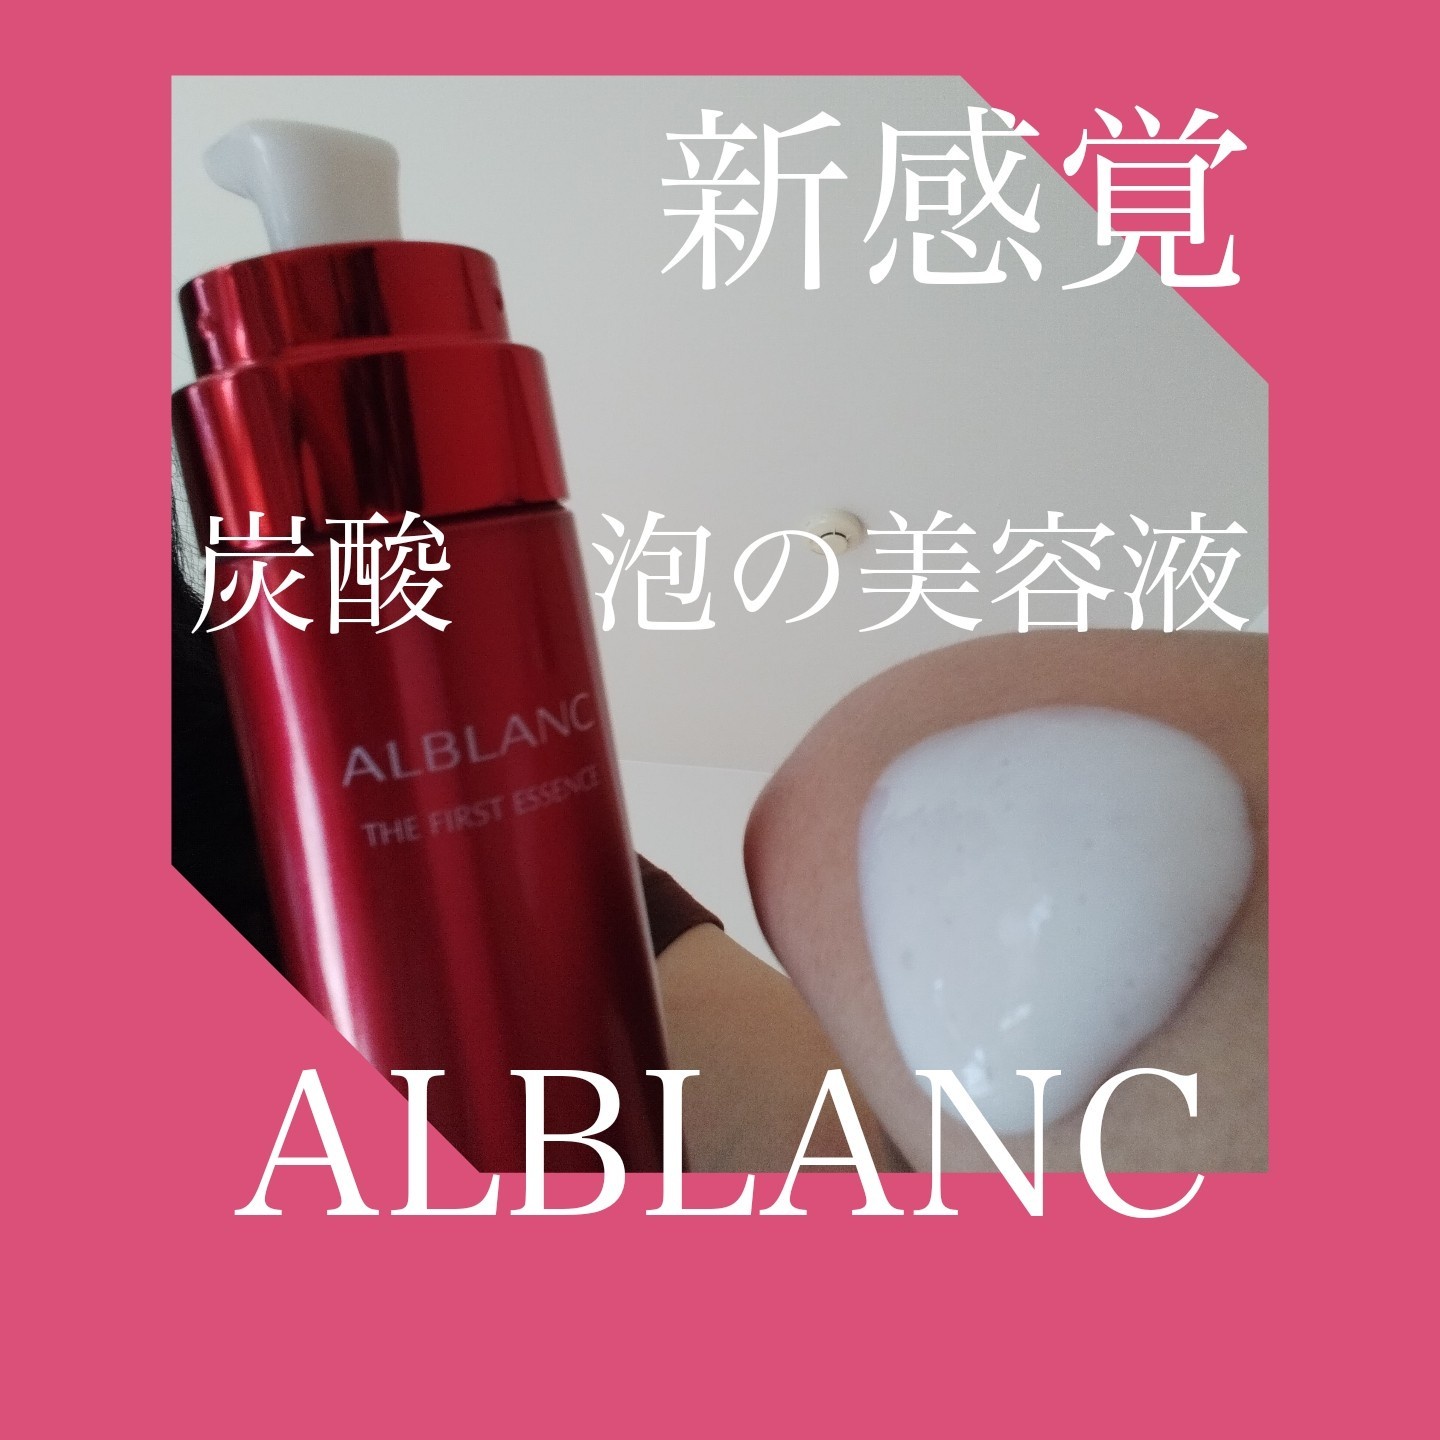 ALBLANC(アルブラン) / アルブラン ザ ファーストエッセンスの公式商品 